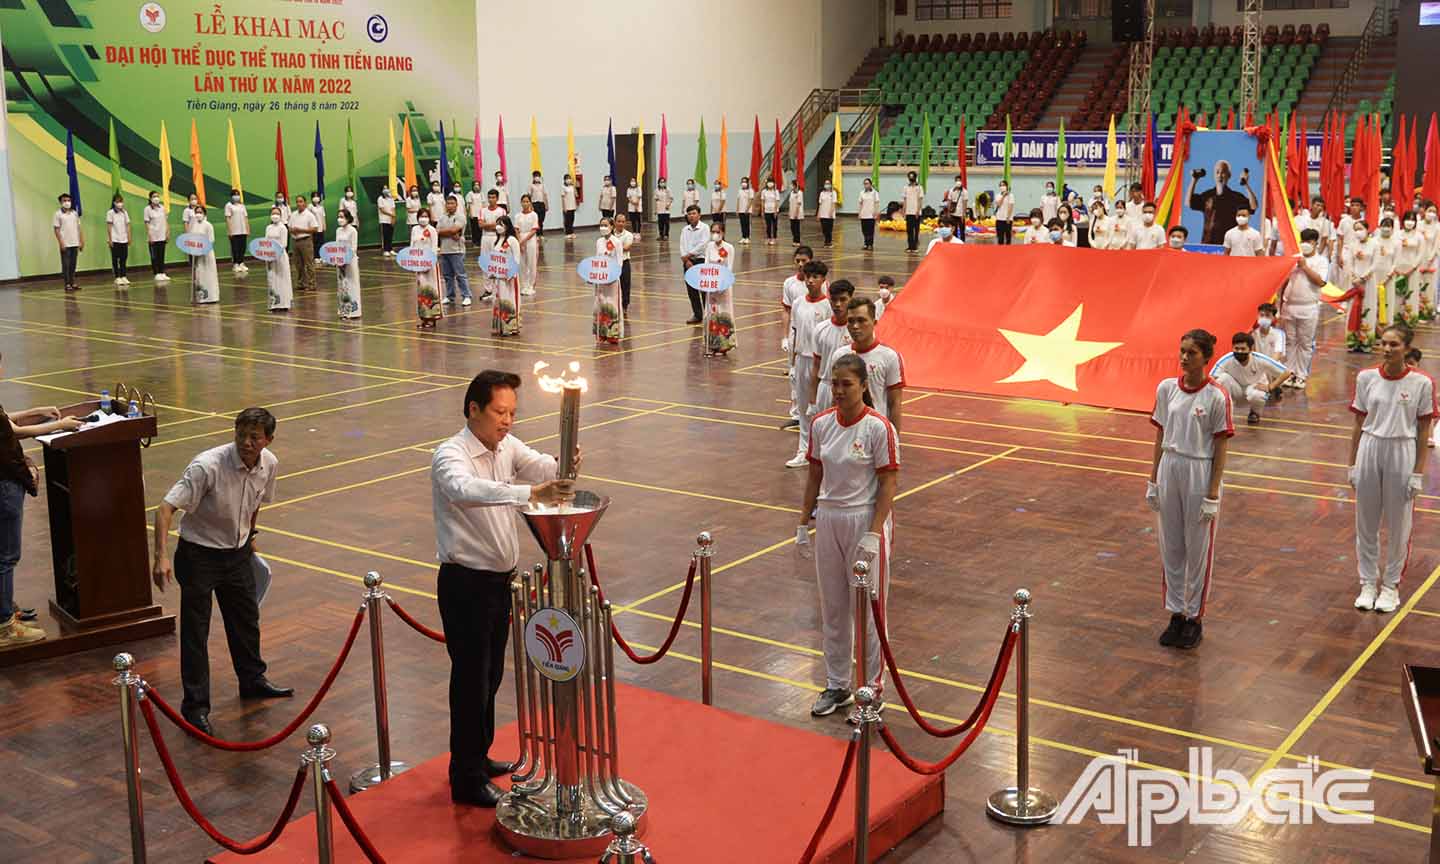 Đồng chí Nguyễn Thành Diệu thực hiện nghi thức thắm đuốc đại hội tại buổi biểu diễn báo cáo.